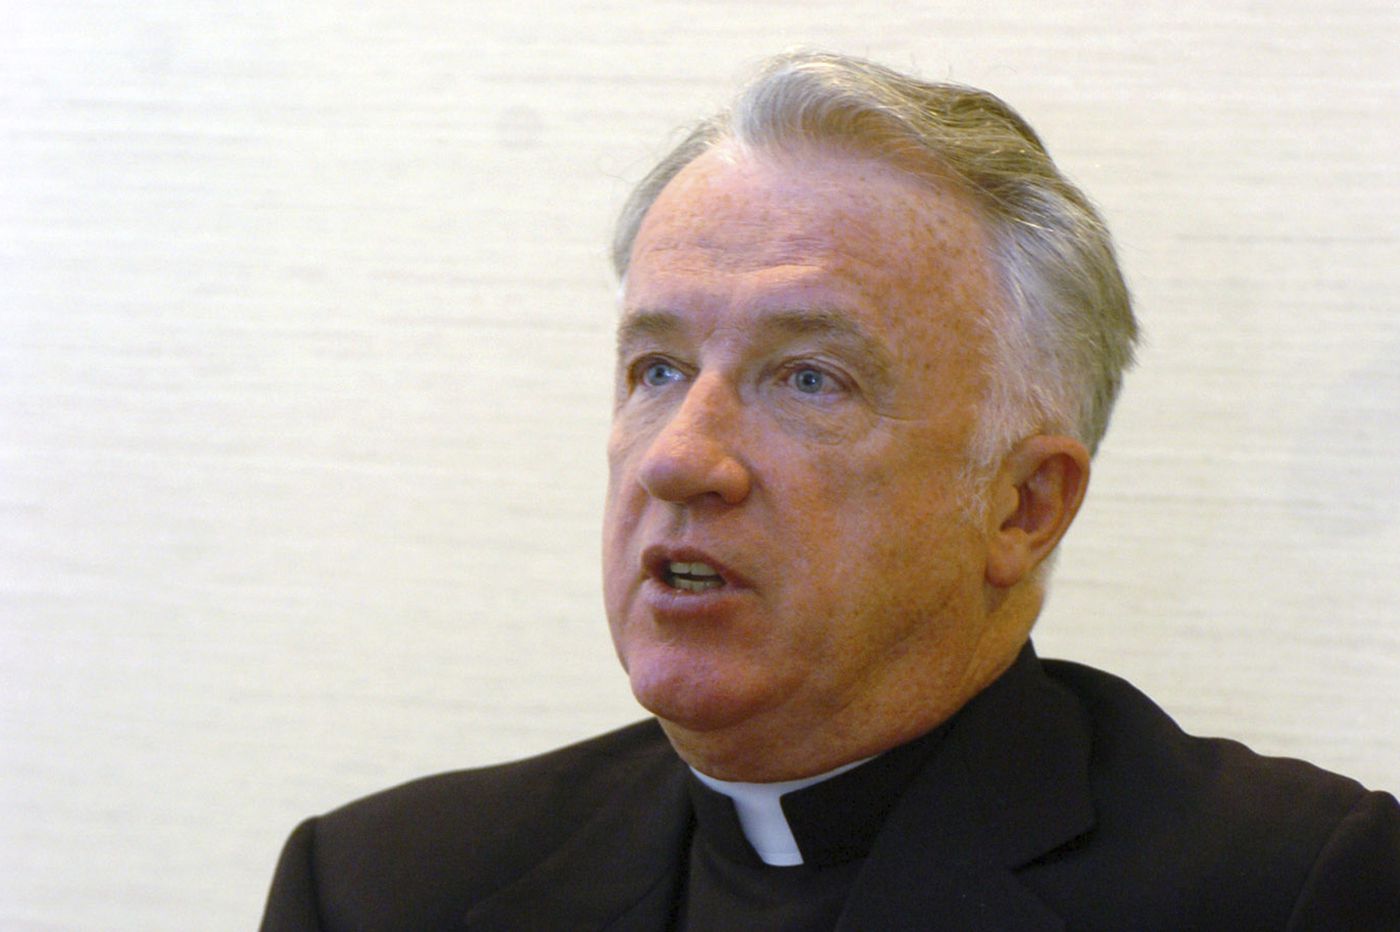 âTheyâre all out to destroy me,â Philly native Bishop Michael Bransfield says of abuse lawsuit 